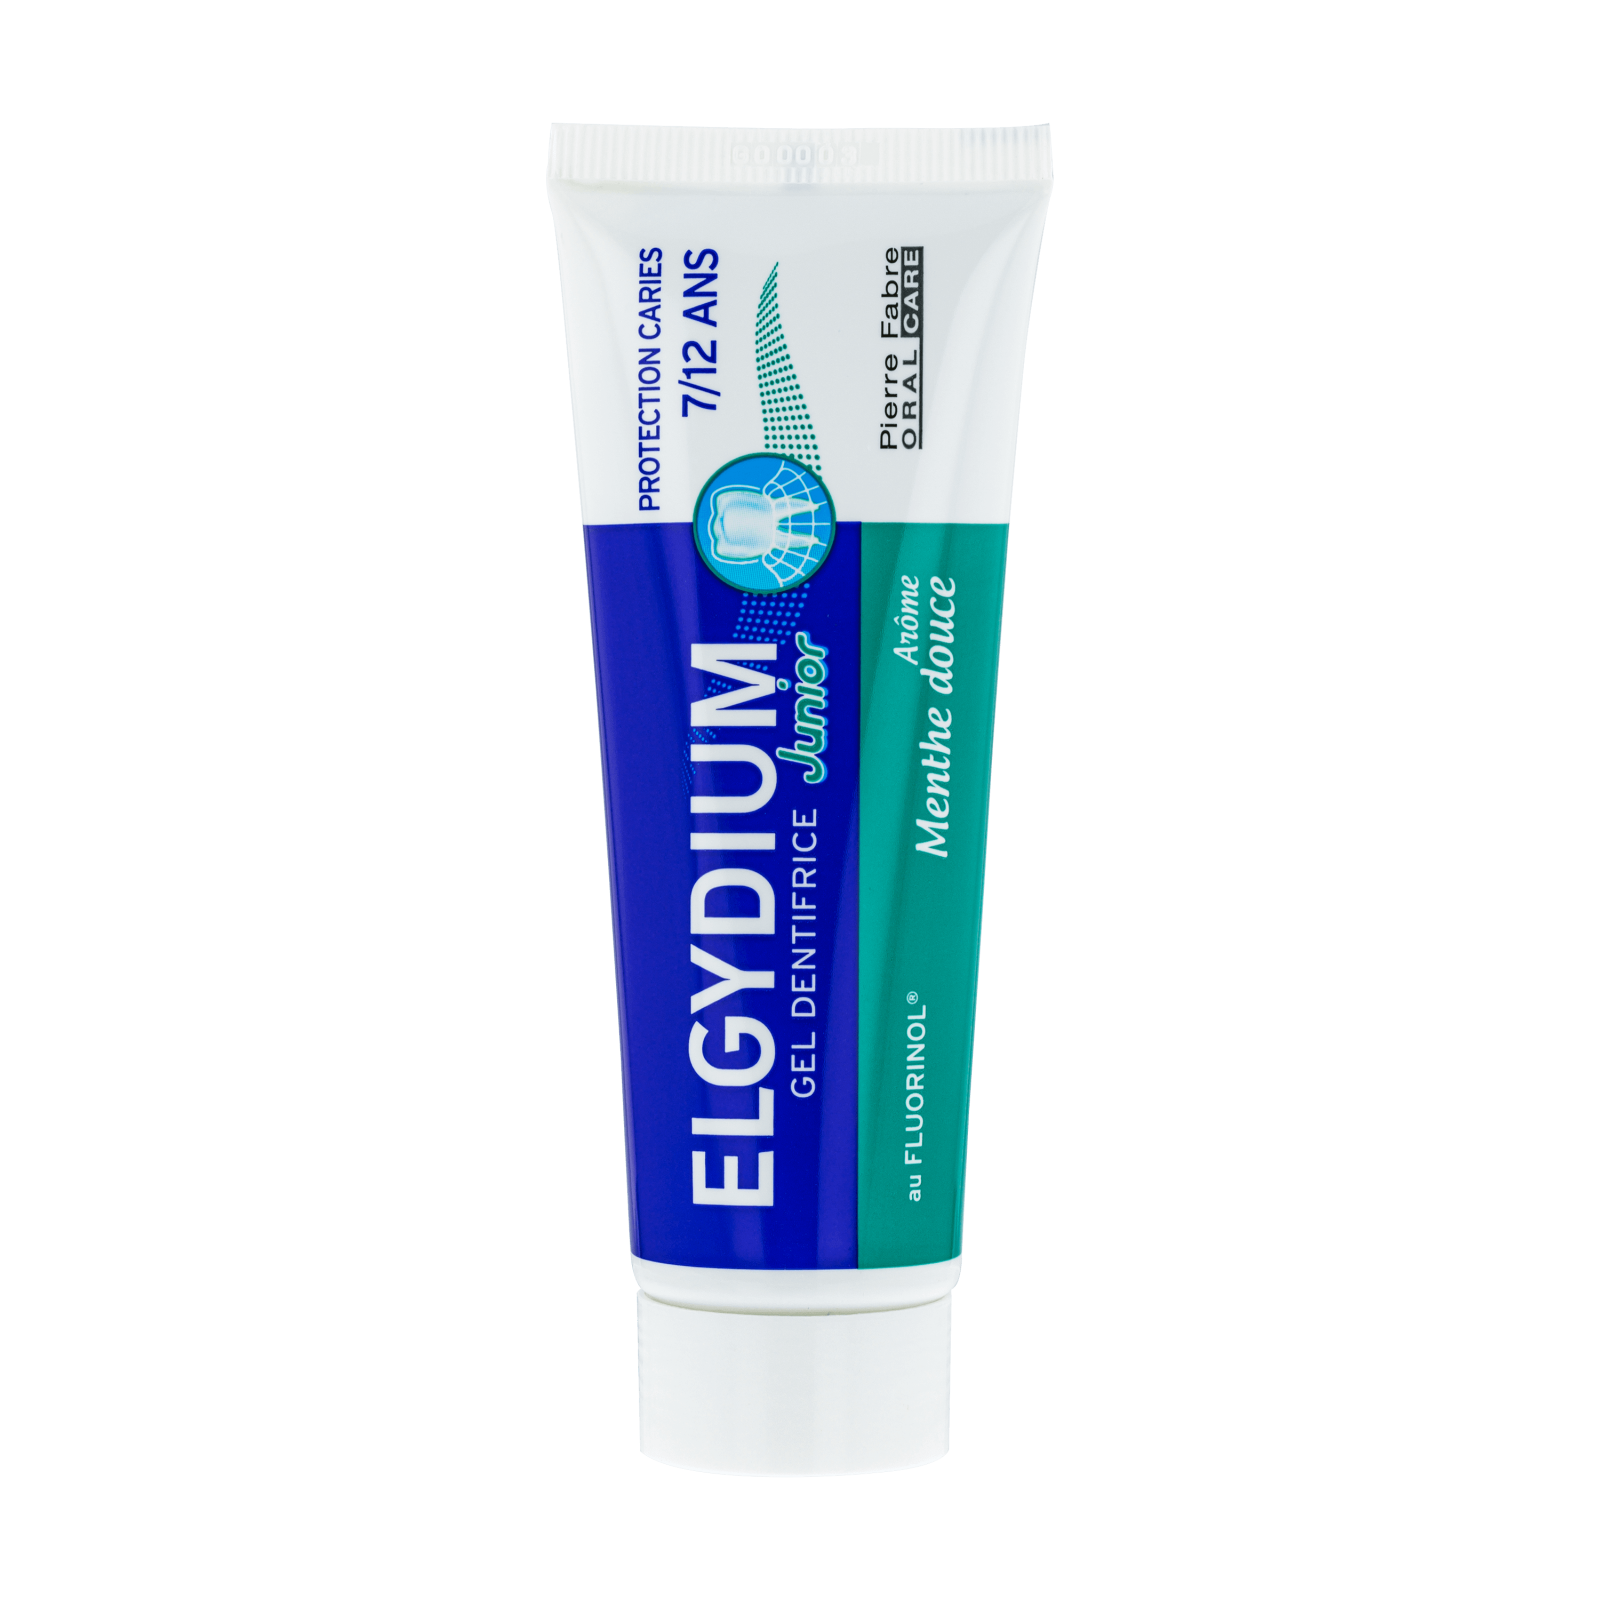 Paste de dinti - Elgydium Junior pasta de dinti pentru copii 7-12 ani cu aroma de menta x 50ml, medik-on.ro